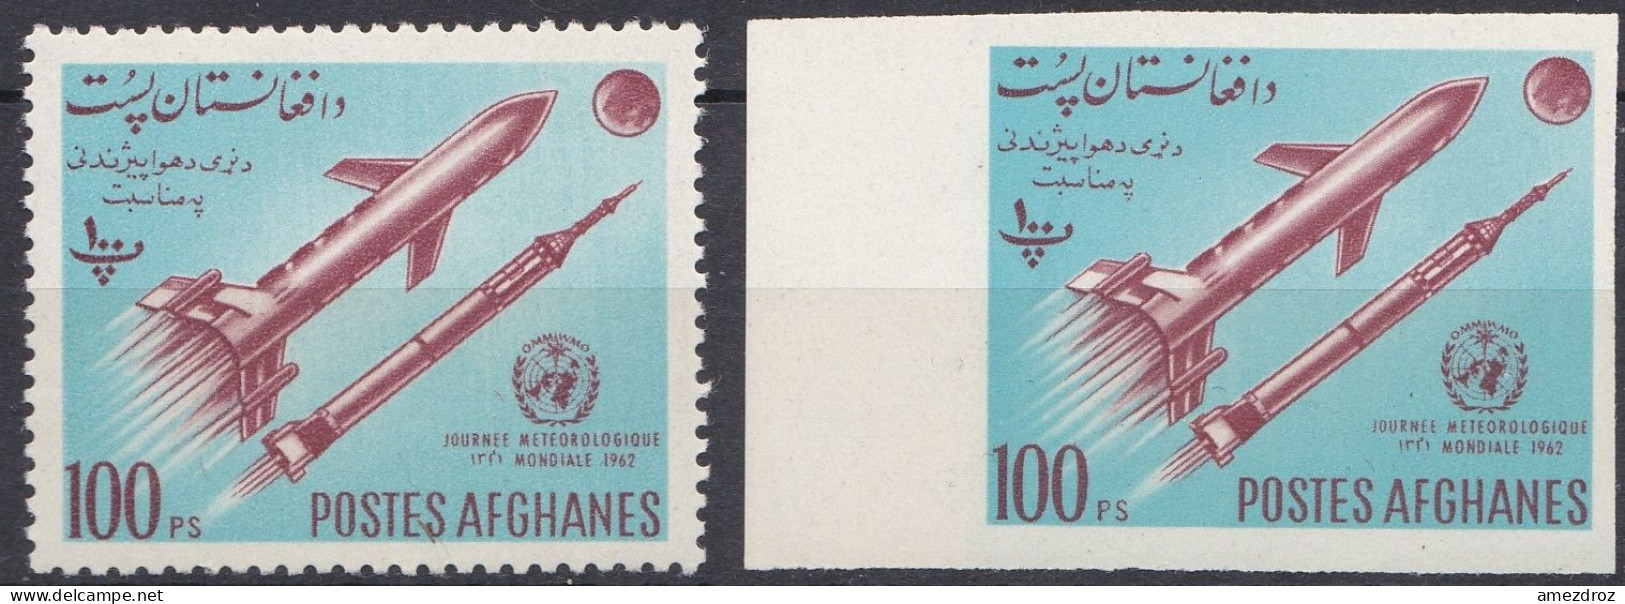 Afghanistan 1962 N° 694 NMH ** Journée Météorologique Mondiale Fusées (J26) - Afghanistan